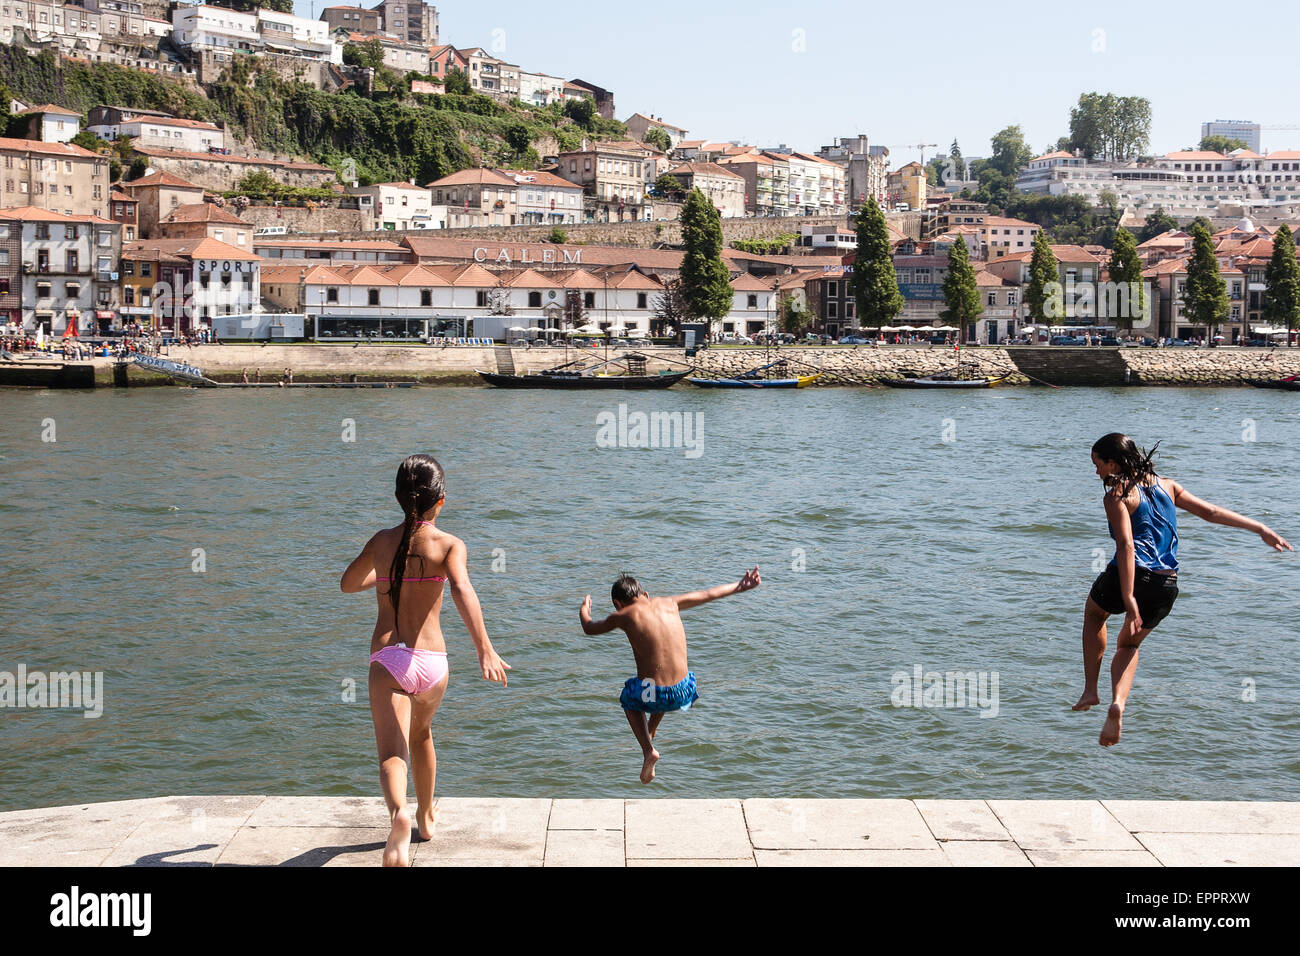 Im Stadtteil Ribeira, das mittelalterliche Viertel am nördlichen Ufer des Douro Flusses. Einheimischen Tauchen in den Fluss zum Spaß und als Foto aufgenommen im Juli mit 42 Grad Lufttemperatur abkühlen lassen. Porto, auch bekannt als Porto ist die zweitgrößte Stadt in Portugal. Liegt an der Mündung des Flusses Douro im Norden Portugals, Porto ist eines der ältesten europäischen Zentren und als Weltkulturerbe von der UNESCO eingetragen. Porto, Portugal. Stockfoto